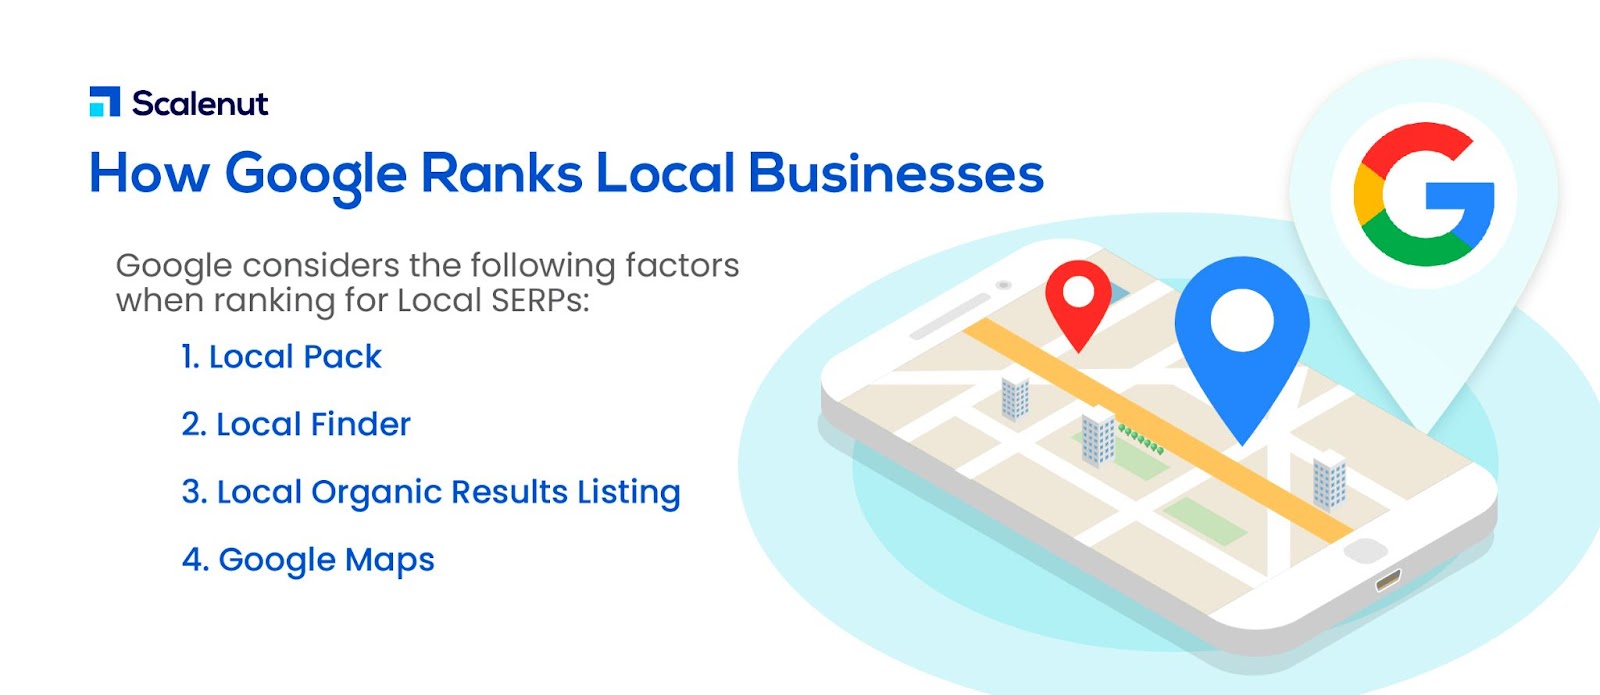 In che modo Google classifica le attività locali?